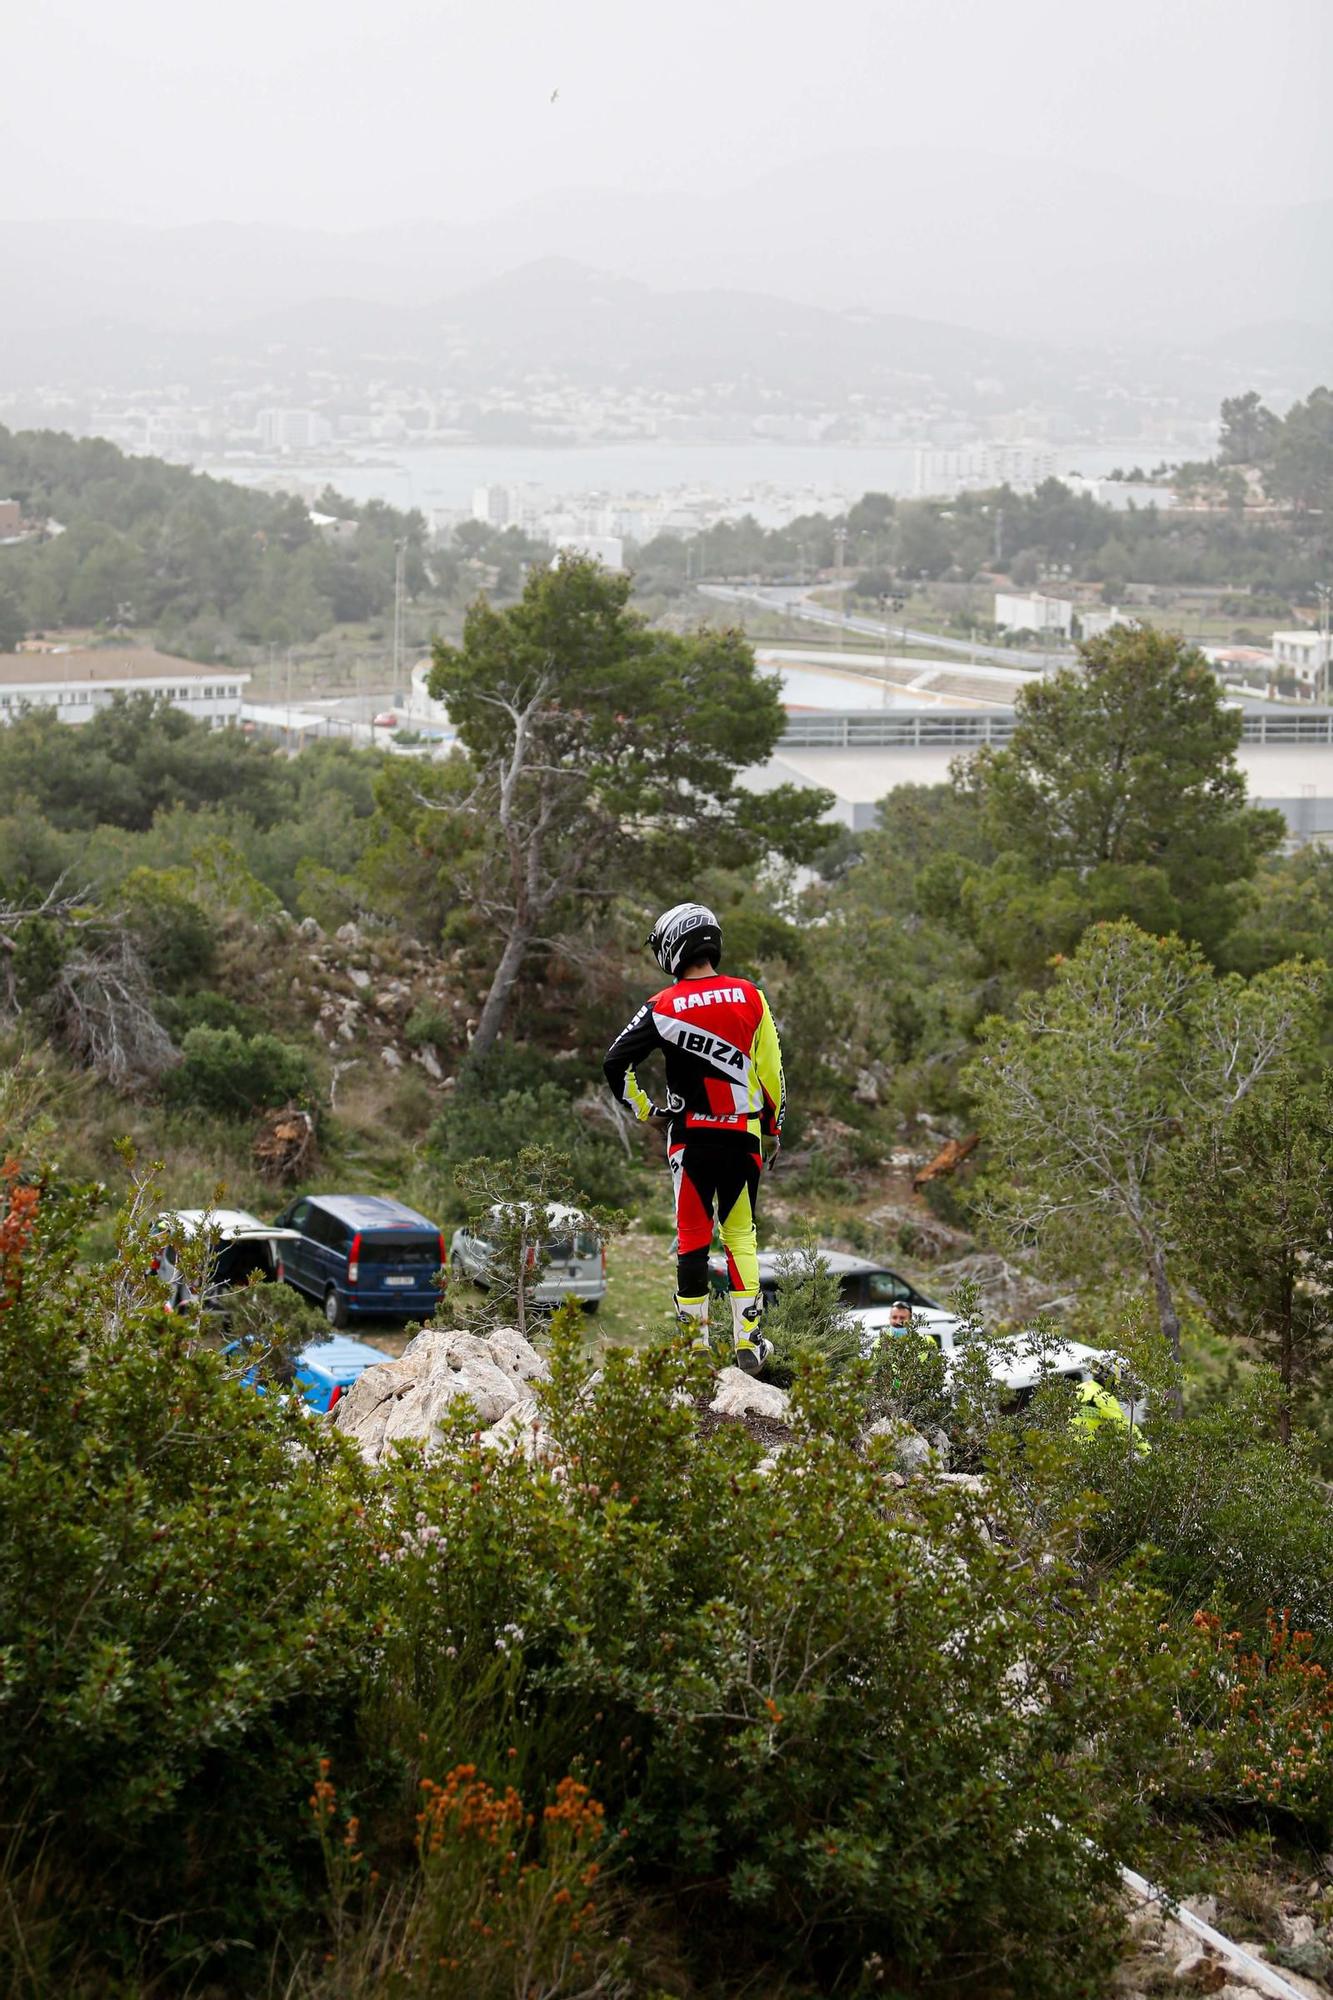 El trial se abre paso en Ibiza entre la pandemia del covid